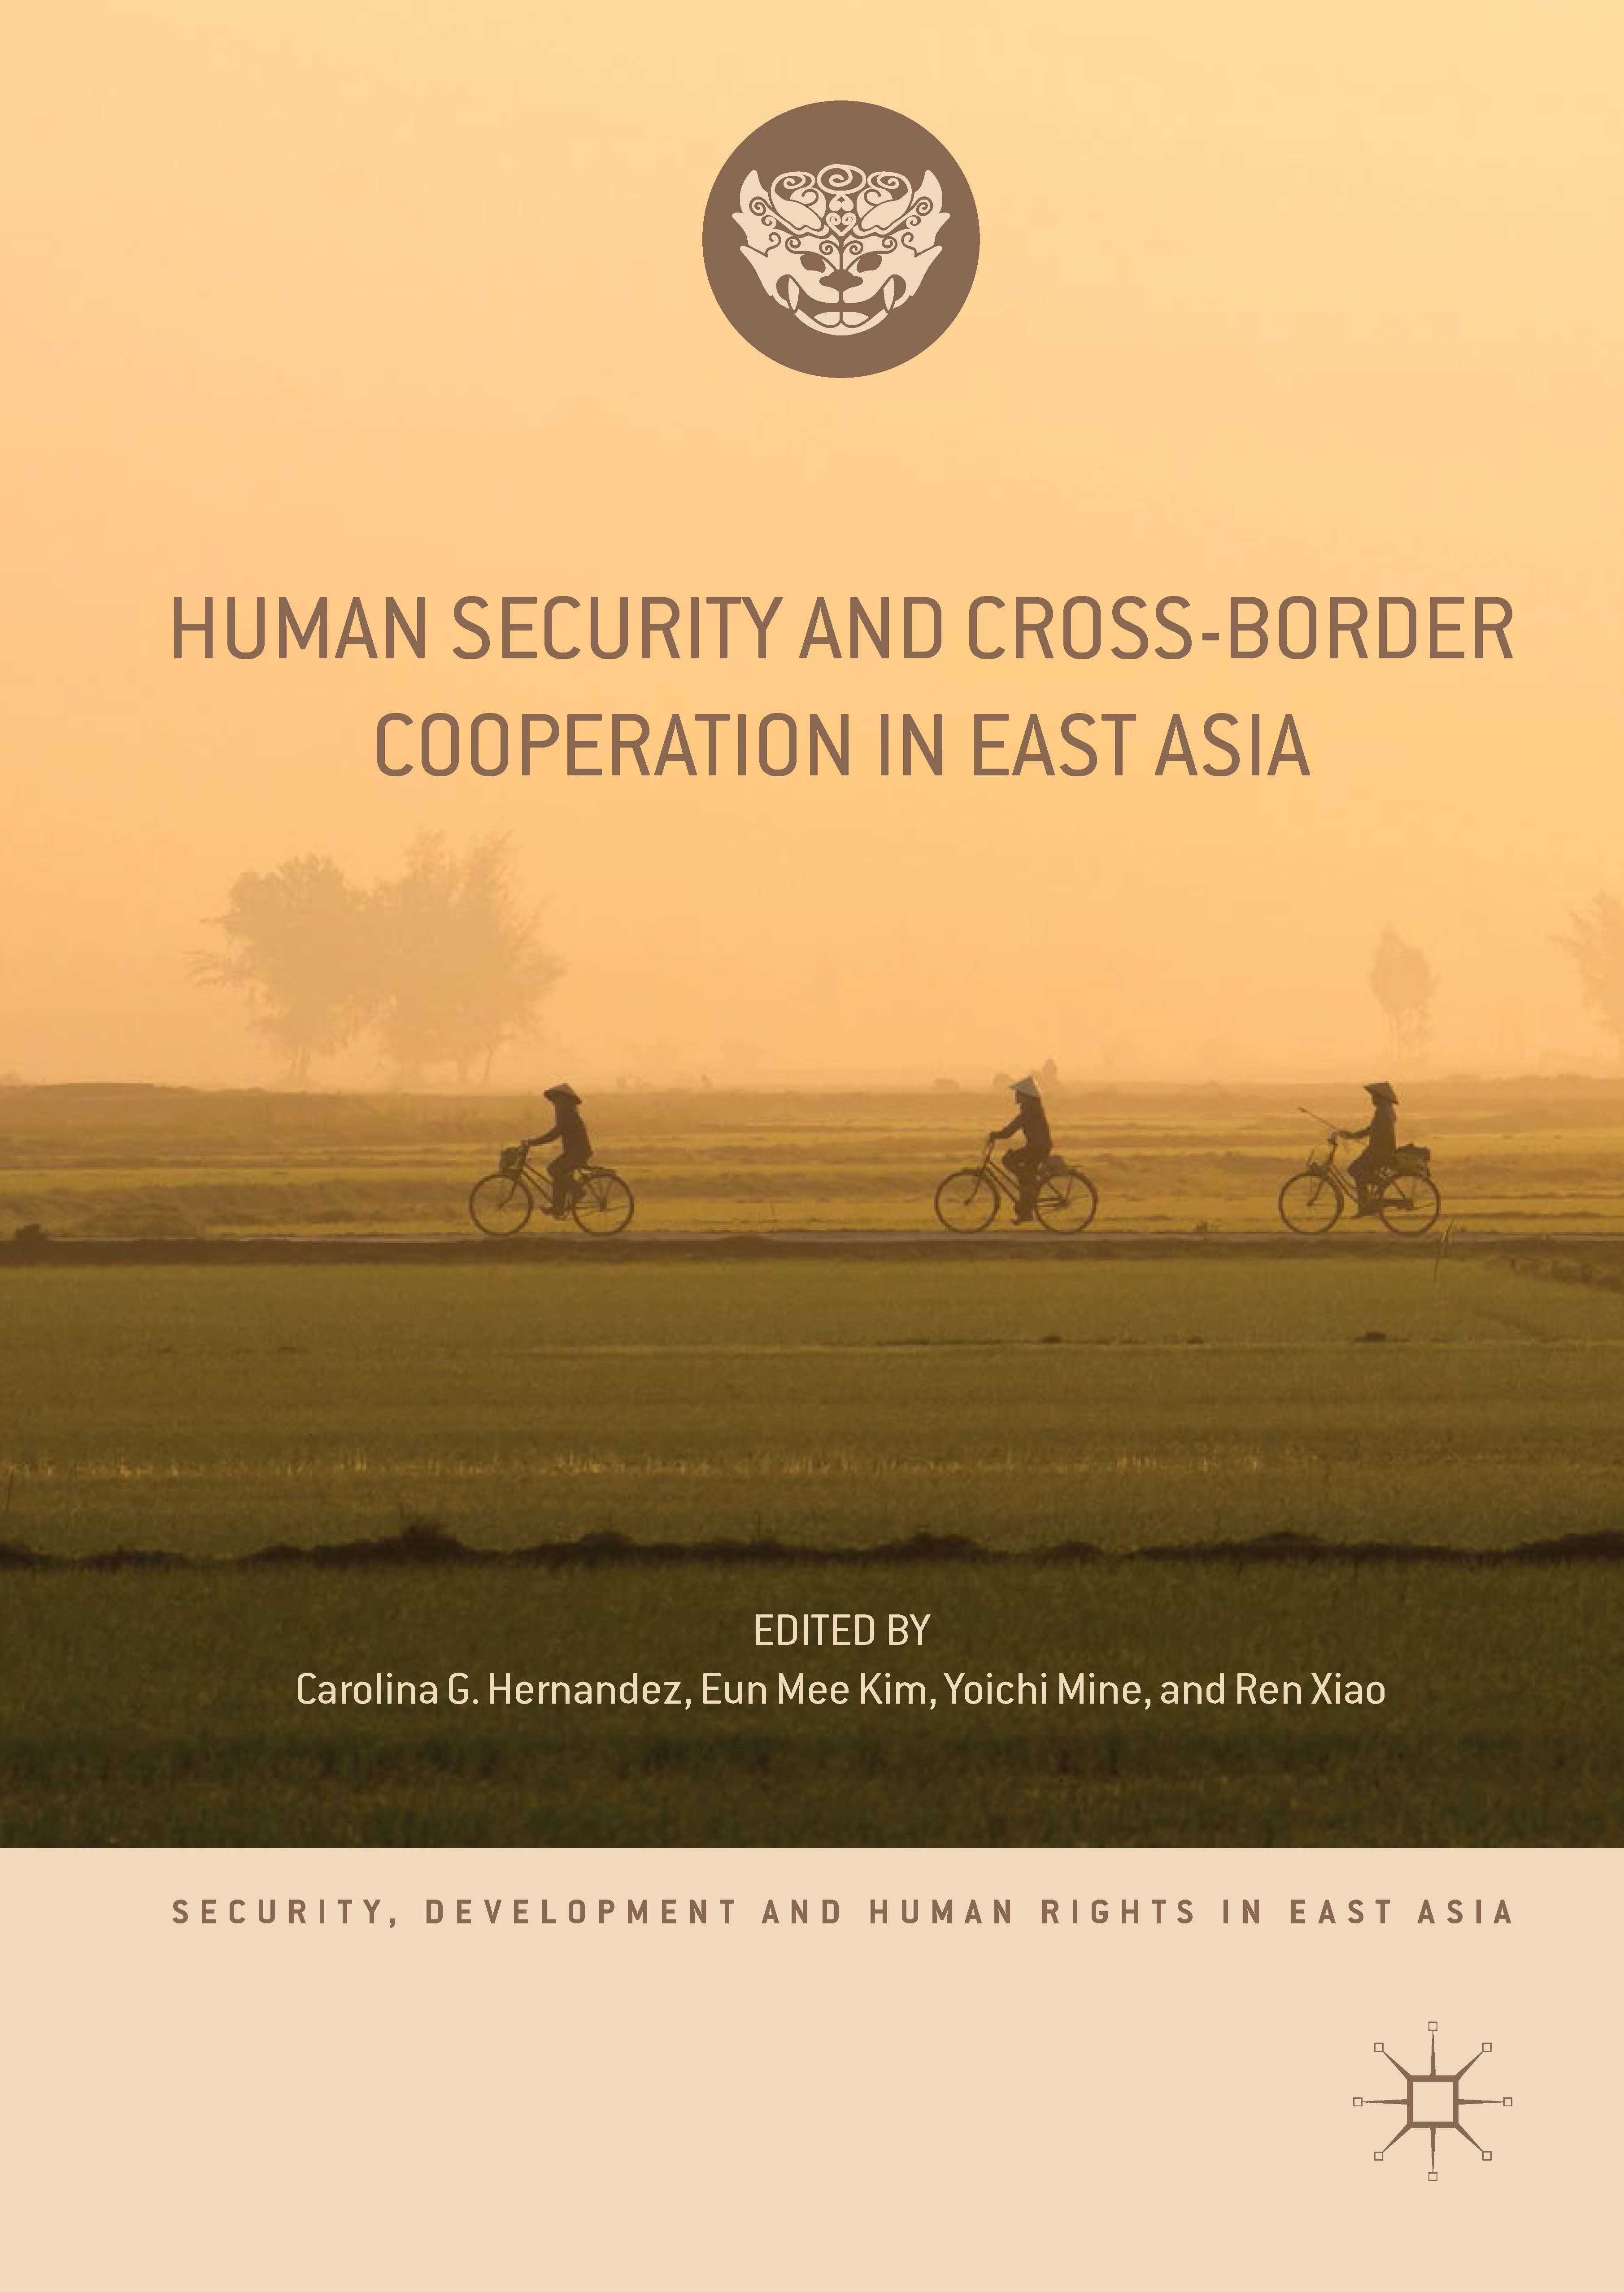 页面提取自－2019_Book_Human Security and Cross-Border Cooperation in East Asia.jpg